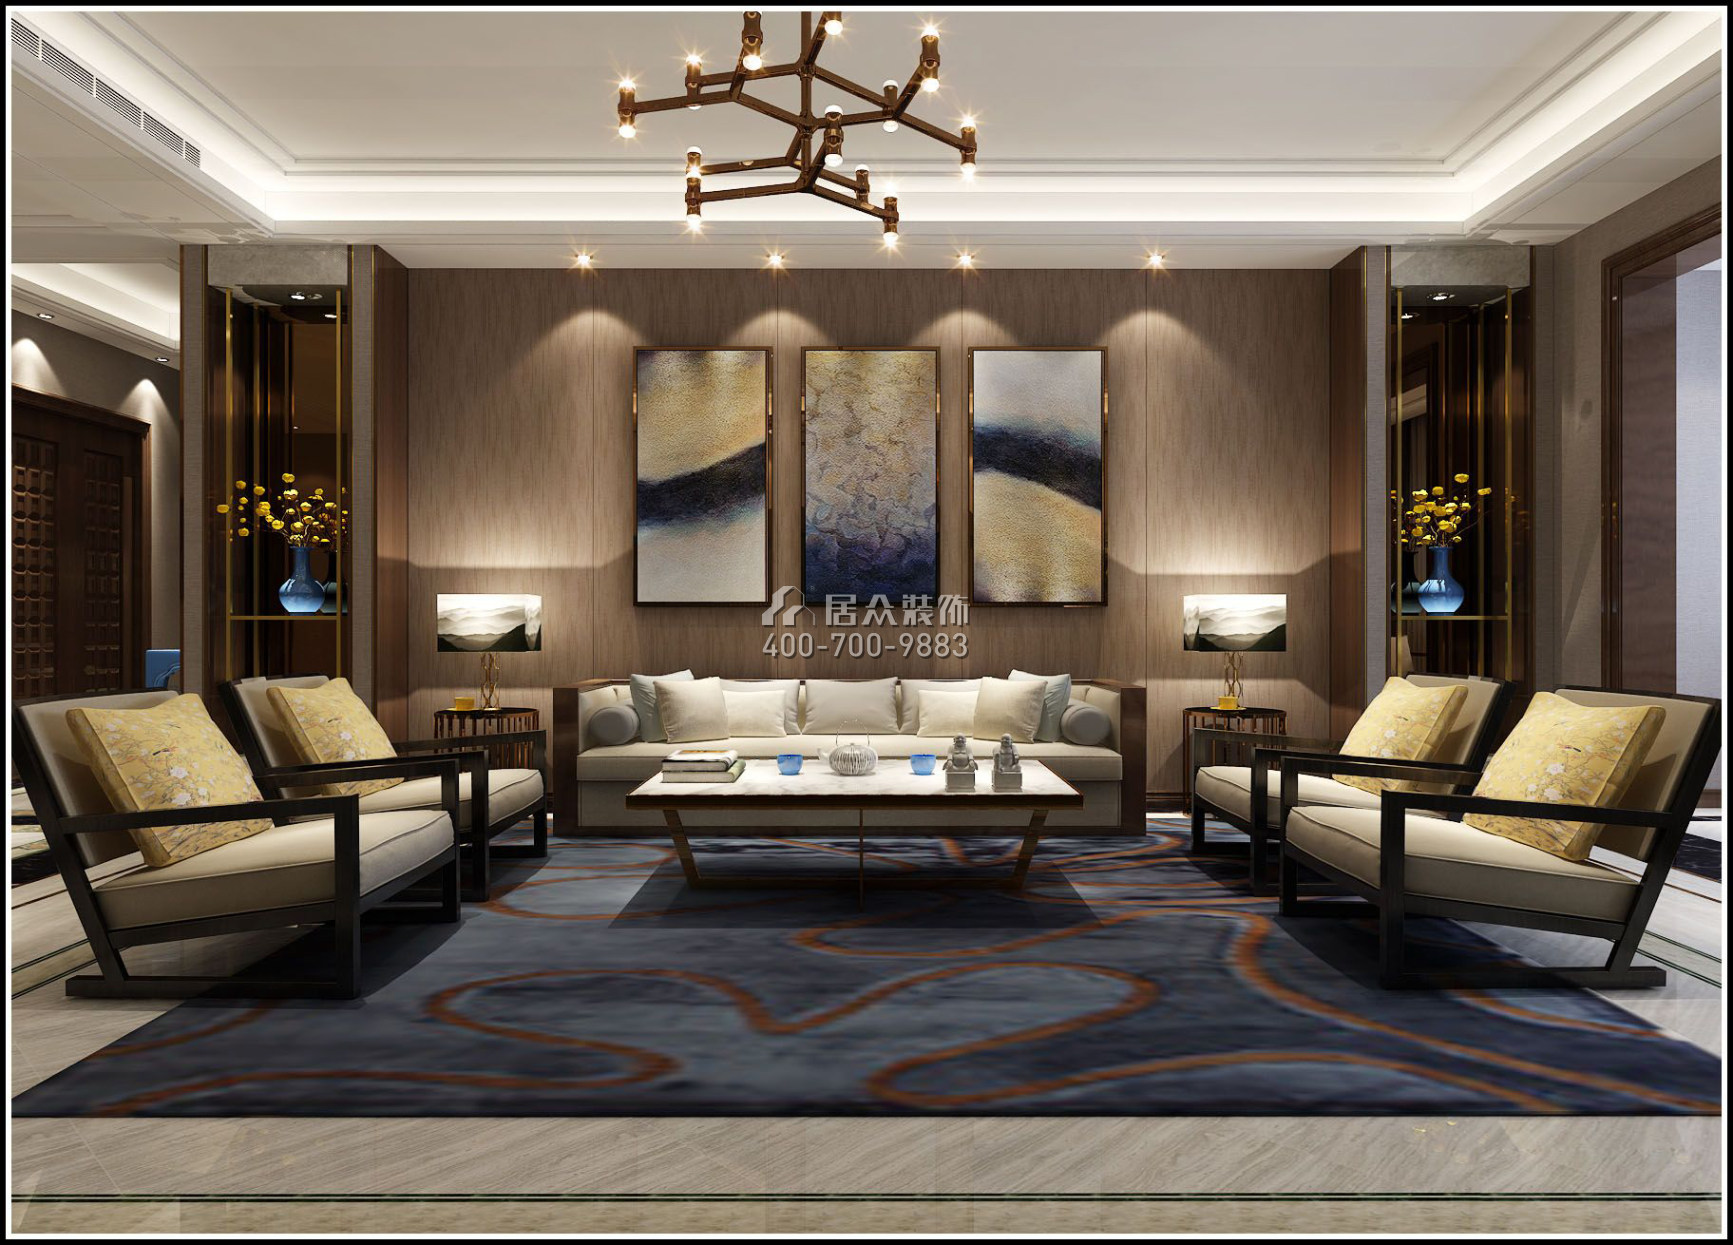 栖棠映山240平方米中式风格平层户型客厅装修效果图